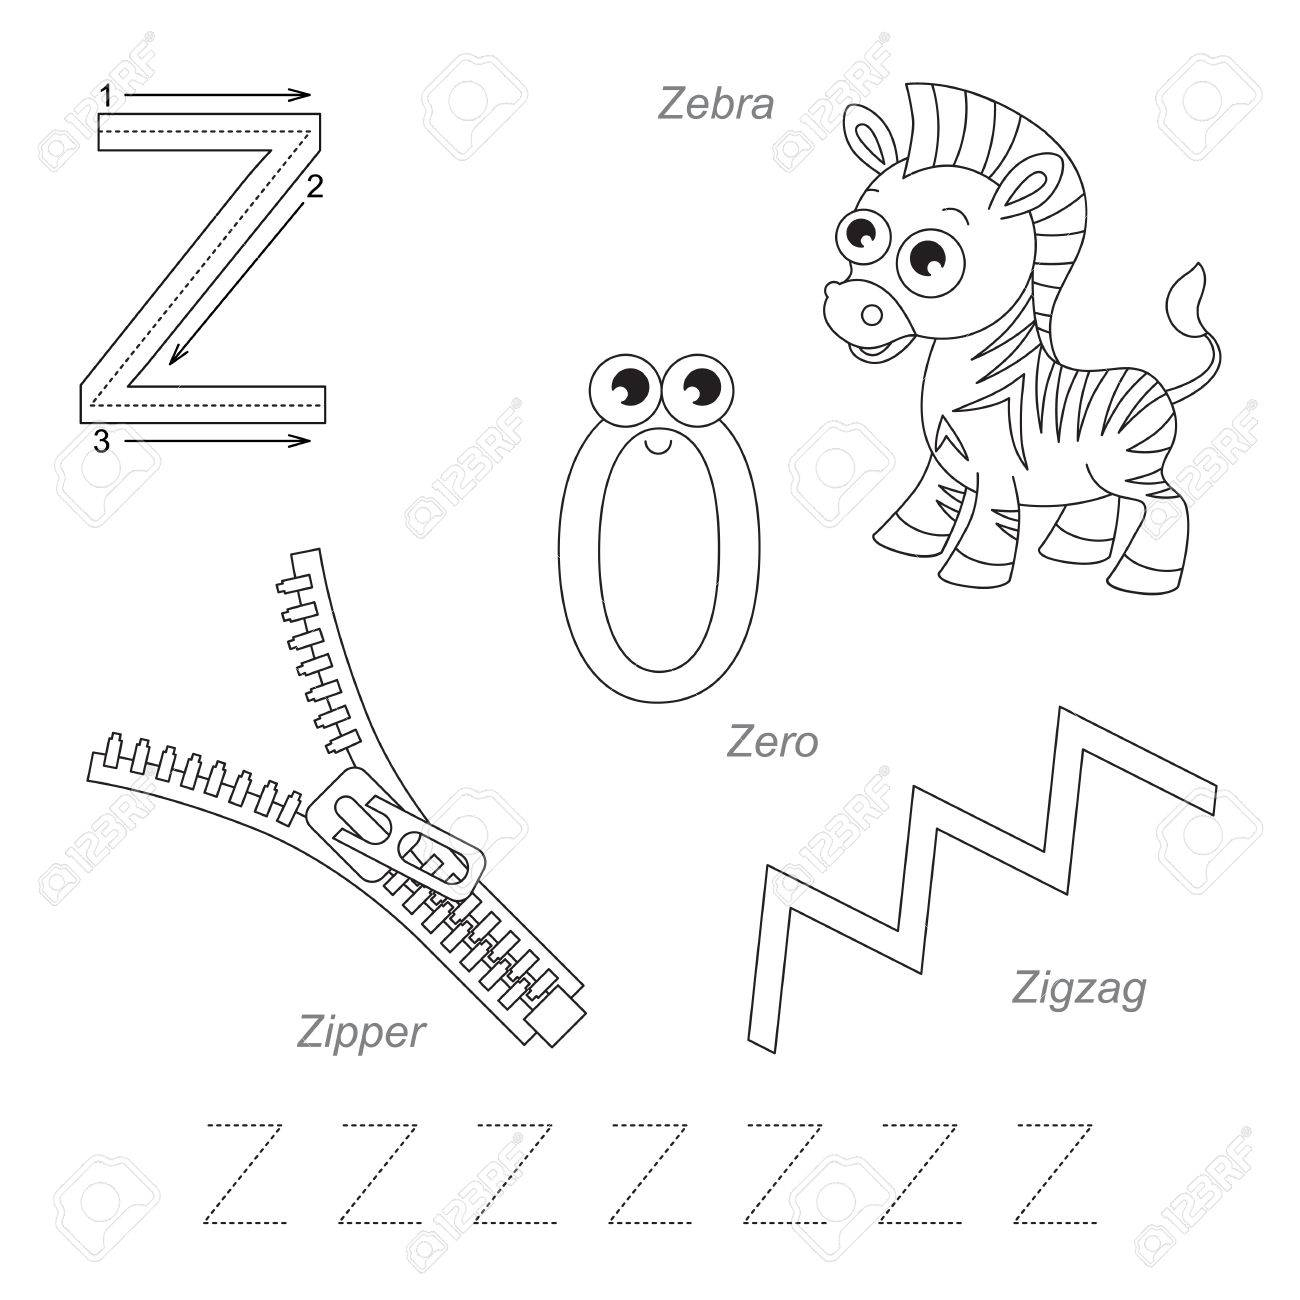 letter-z-worksheets-to-print-activity-shelter-letter-z-coloring